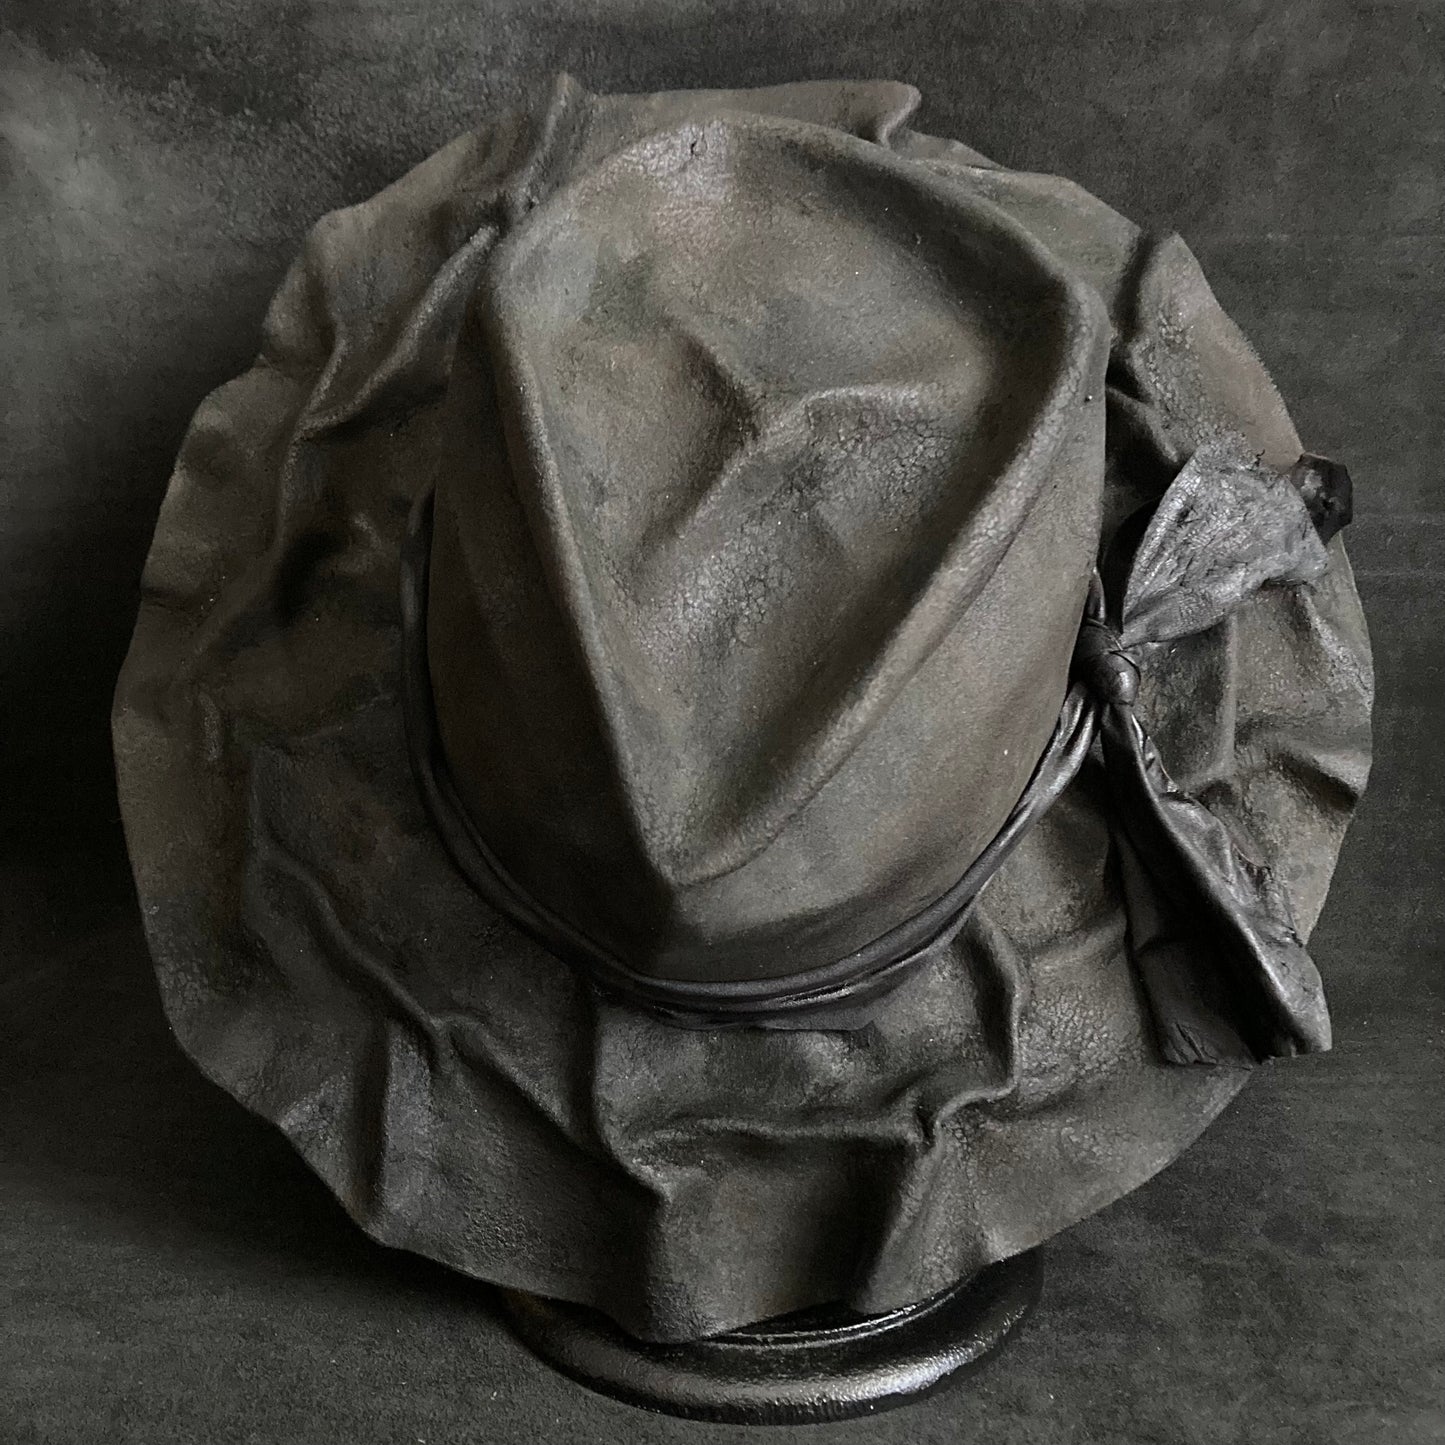 Charcoal wrinkle brim crush hat